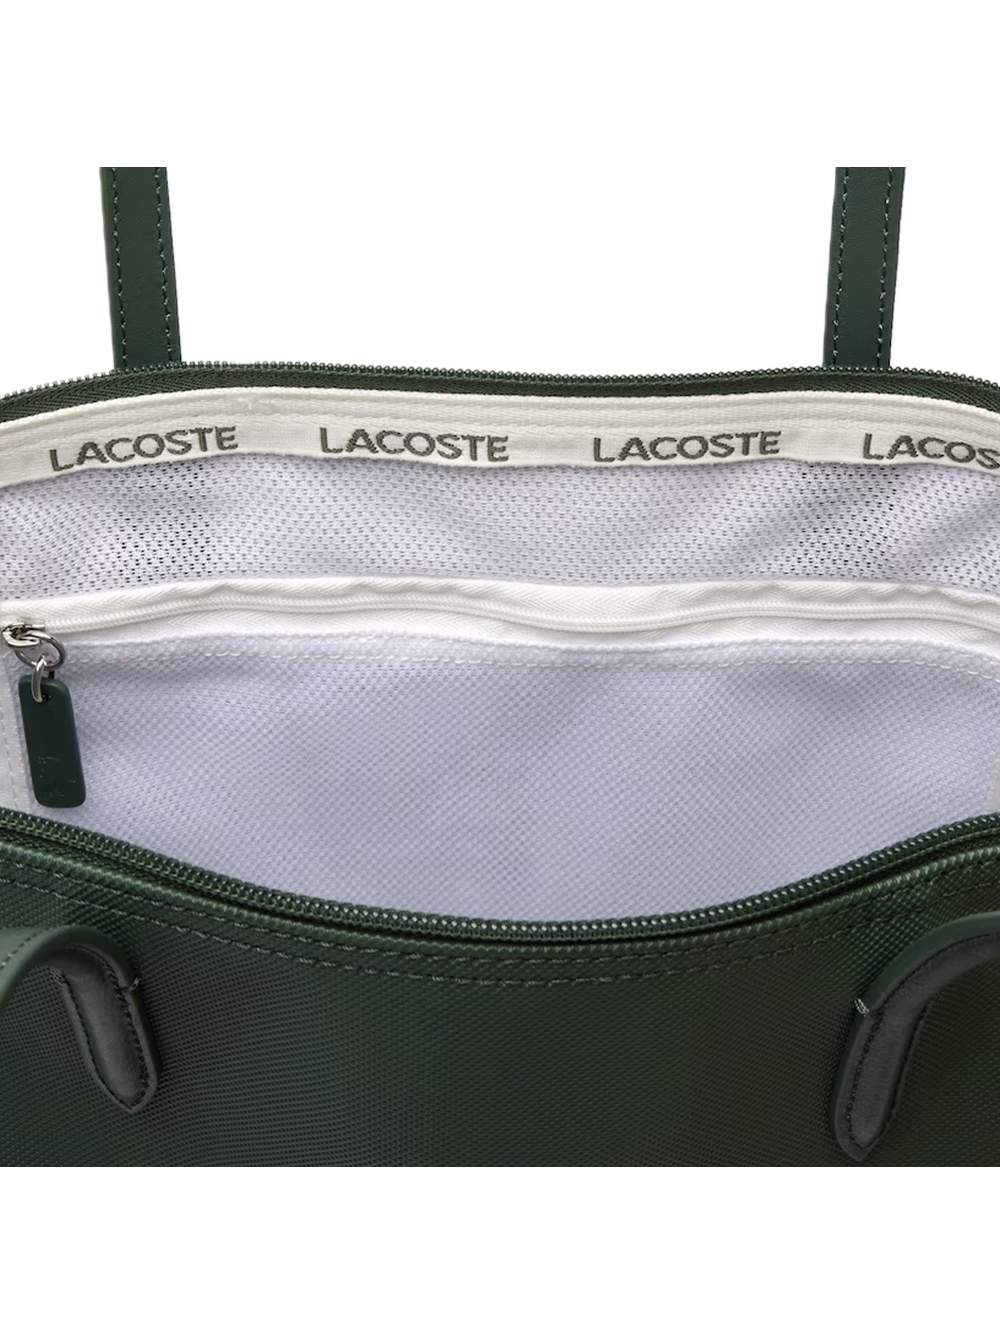 Casquette homme Lacoste Classic logo croco Vert - ZESHOES